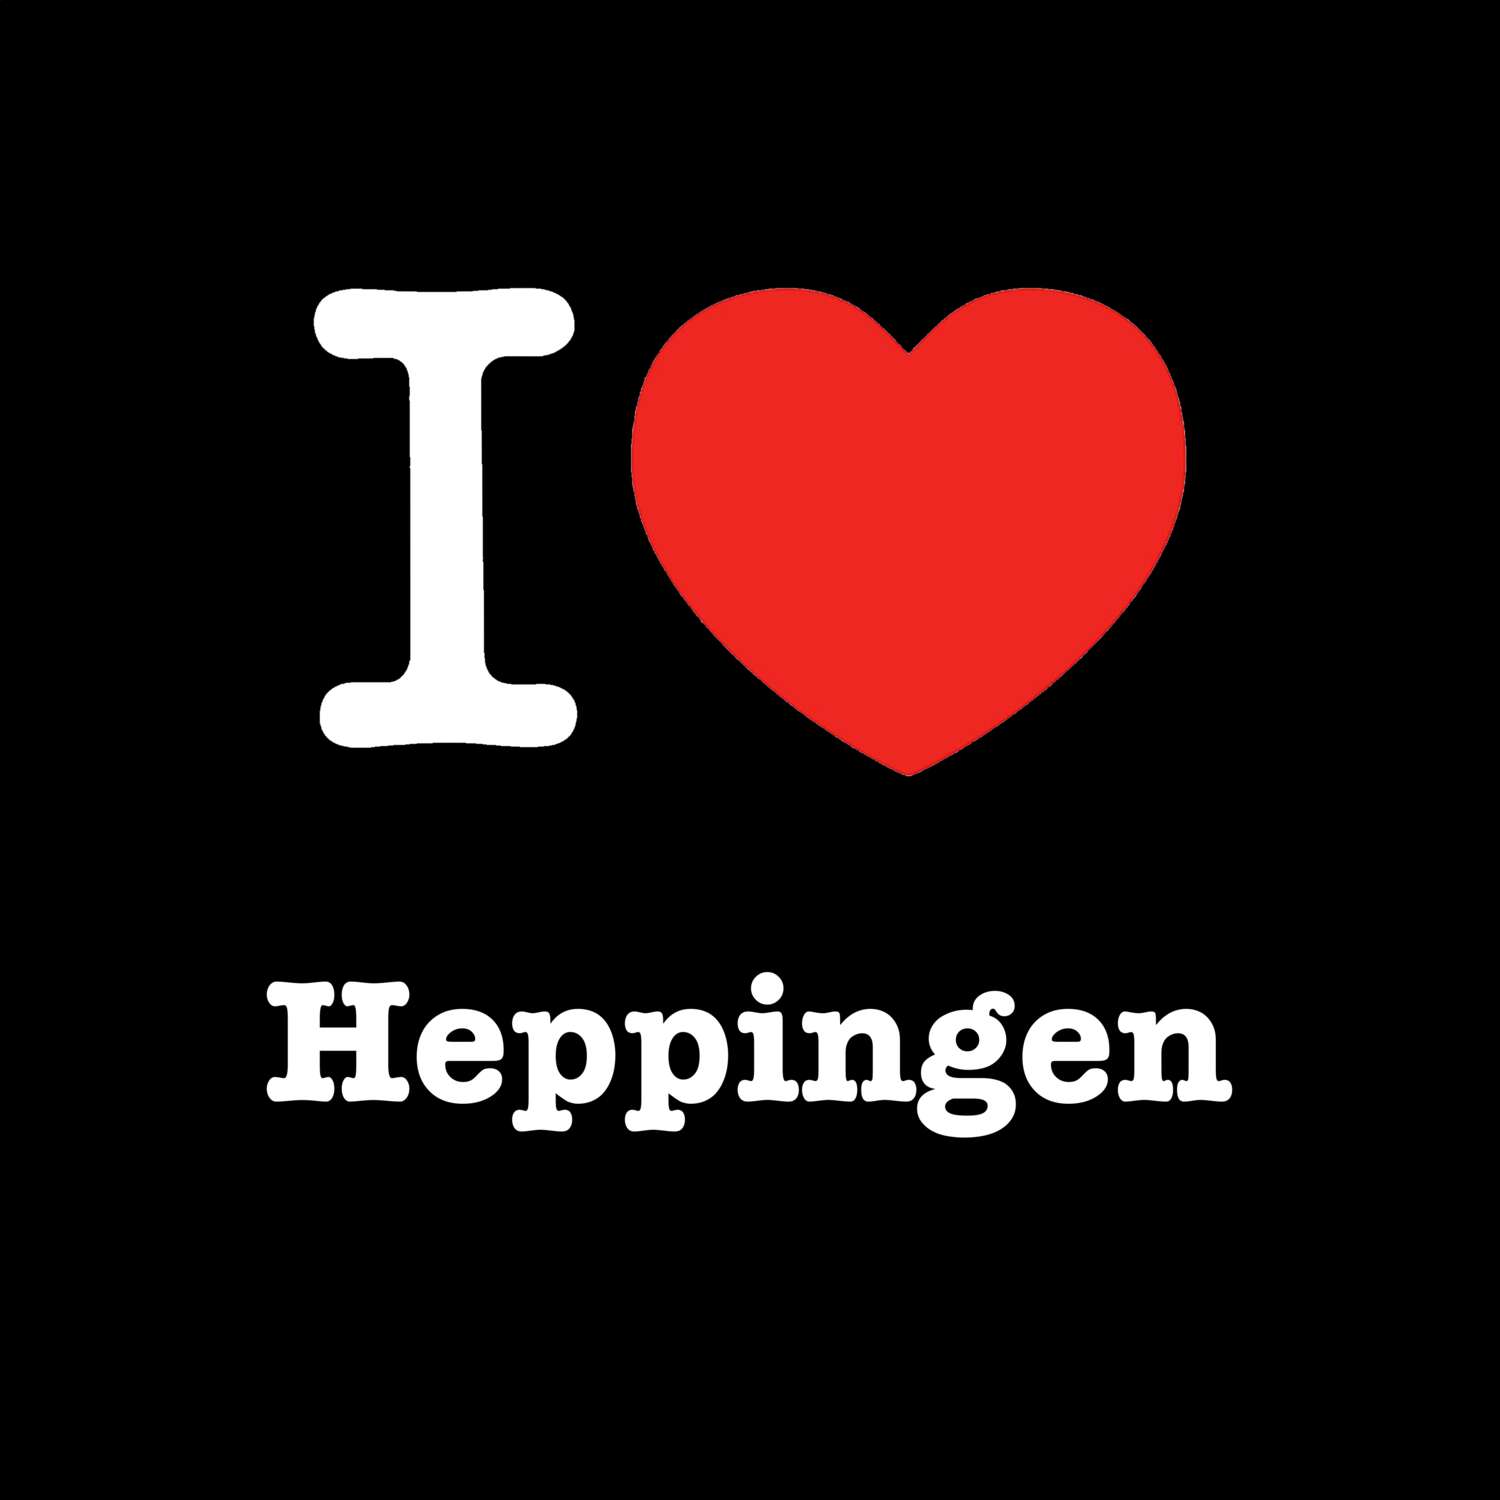 Heppingen T-Shirt »I love«